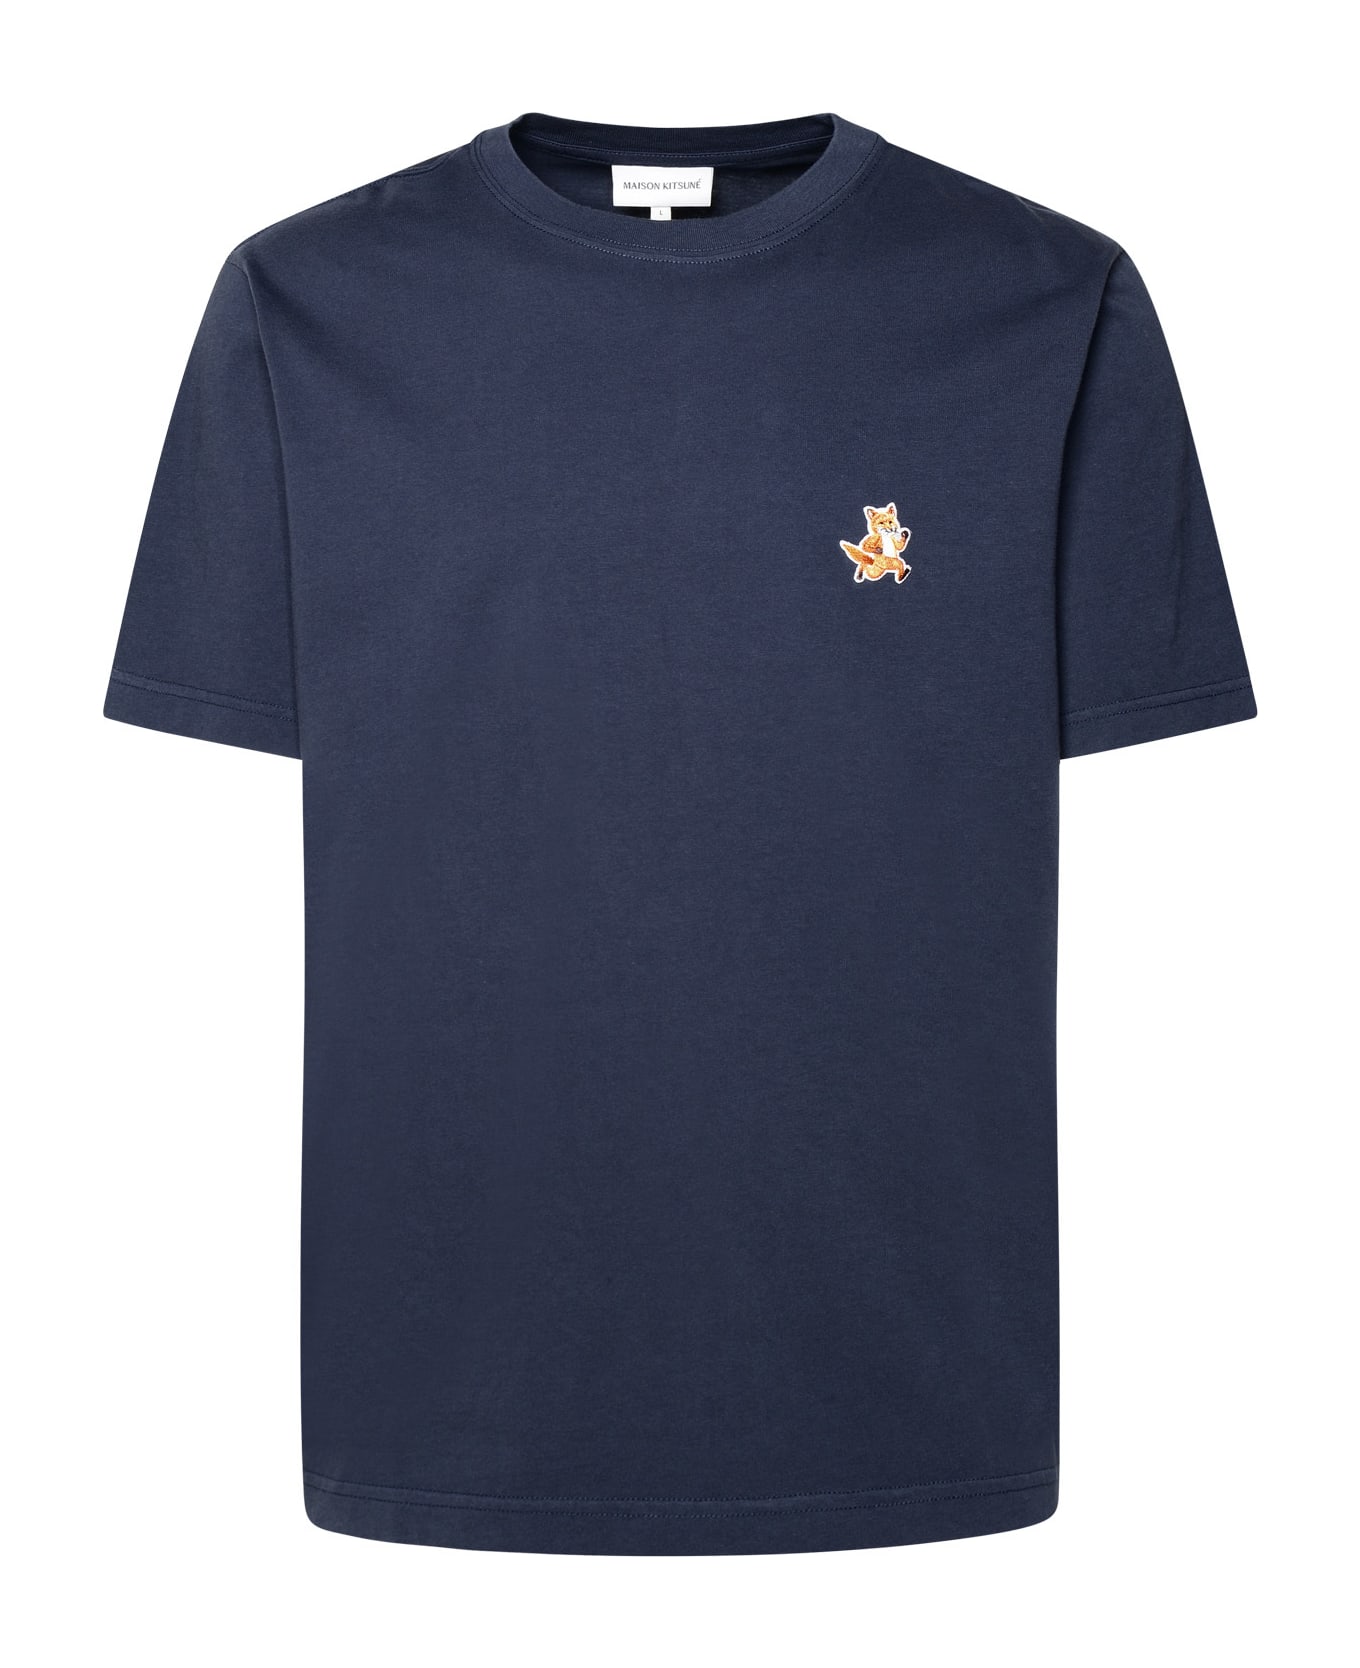 Maison Kitsuné Navy Cotton T-shirt - Navy